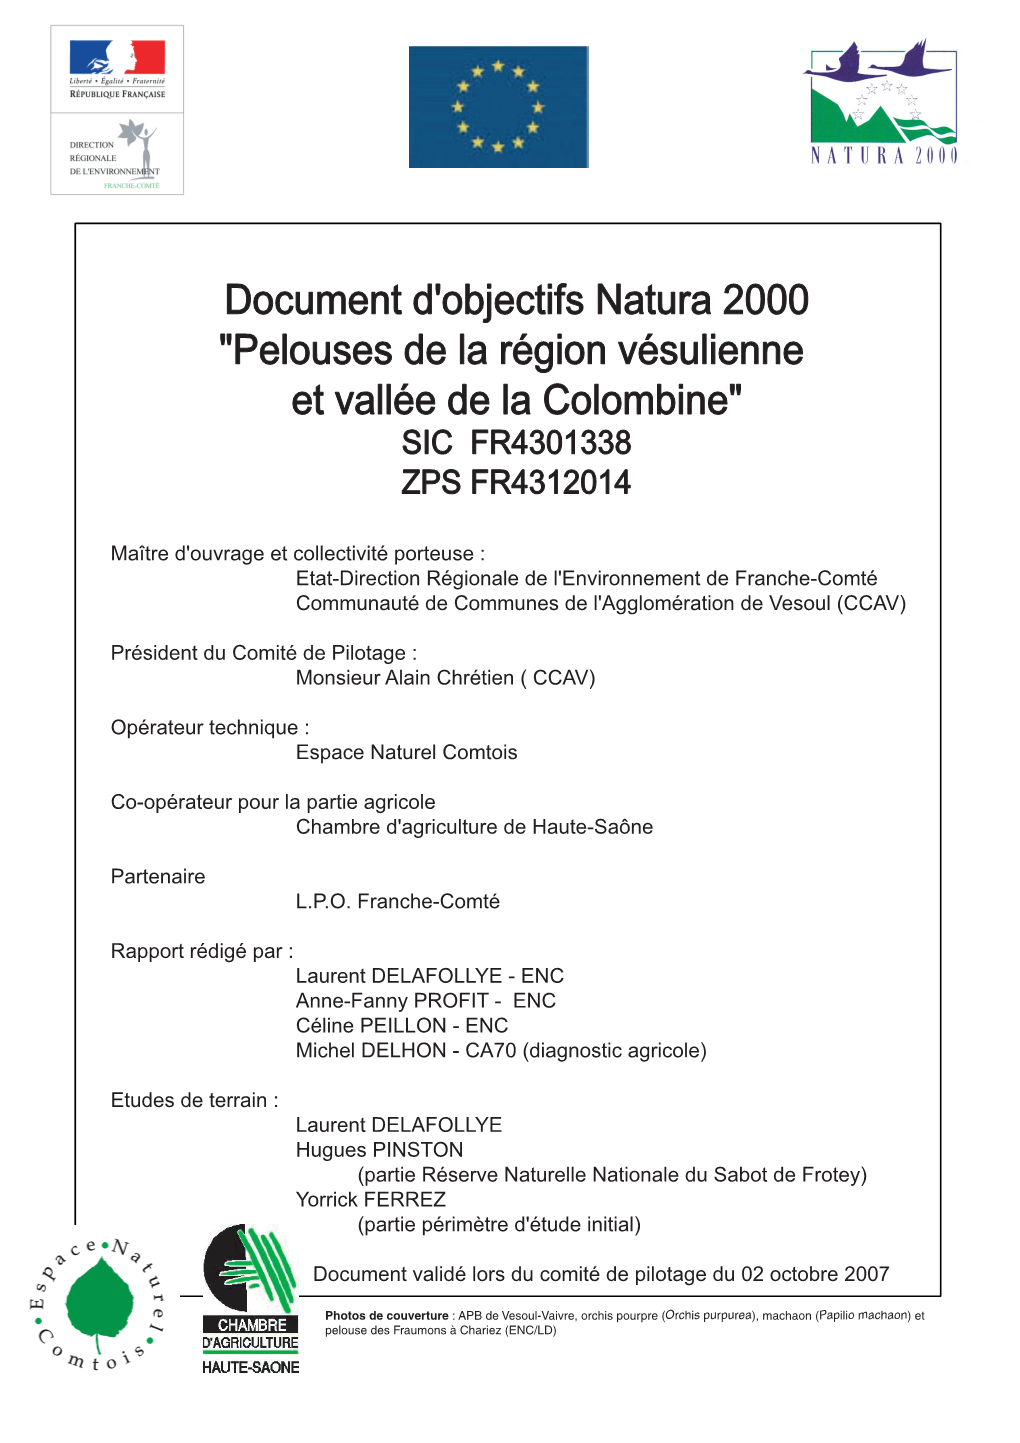 Document D'objectifs Natura 2000 "Pelouses De La Région Vésulienne Et Vallée De La Colombine"